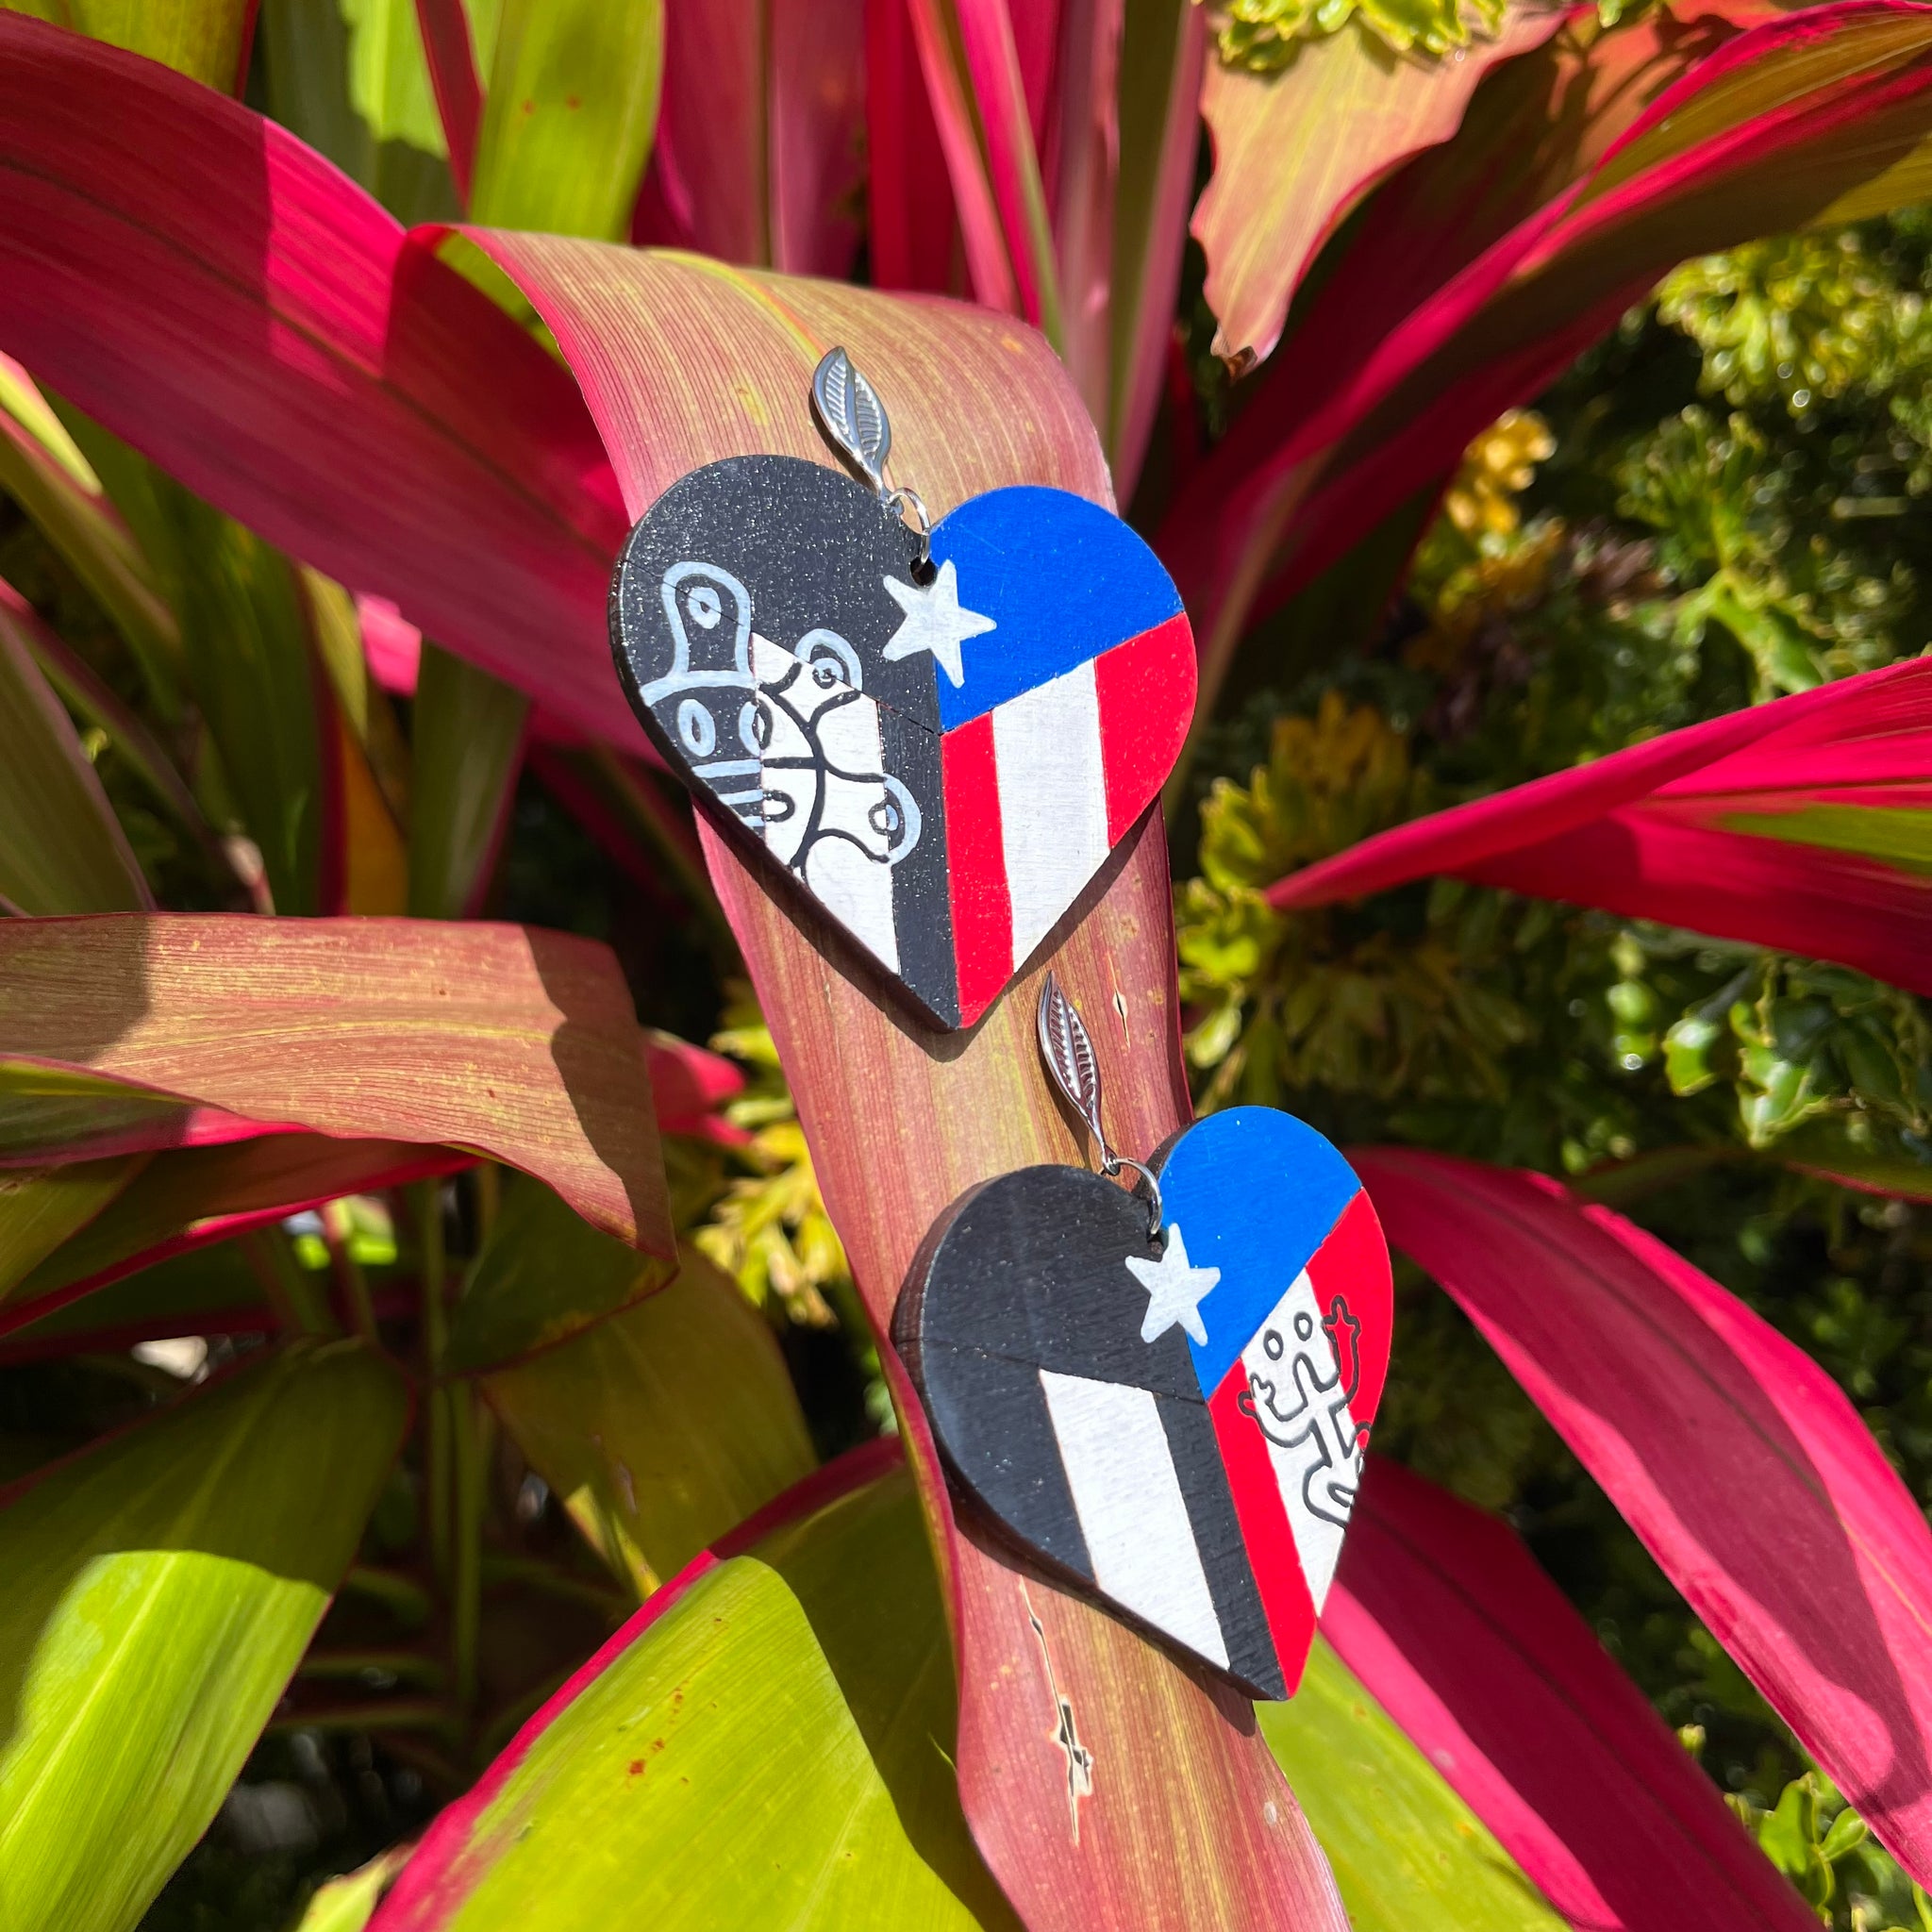 2” Mixed Flag Corazon Taino Earrings